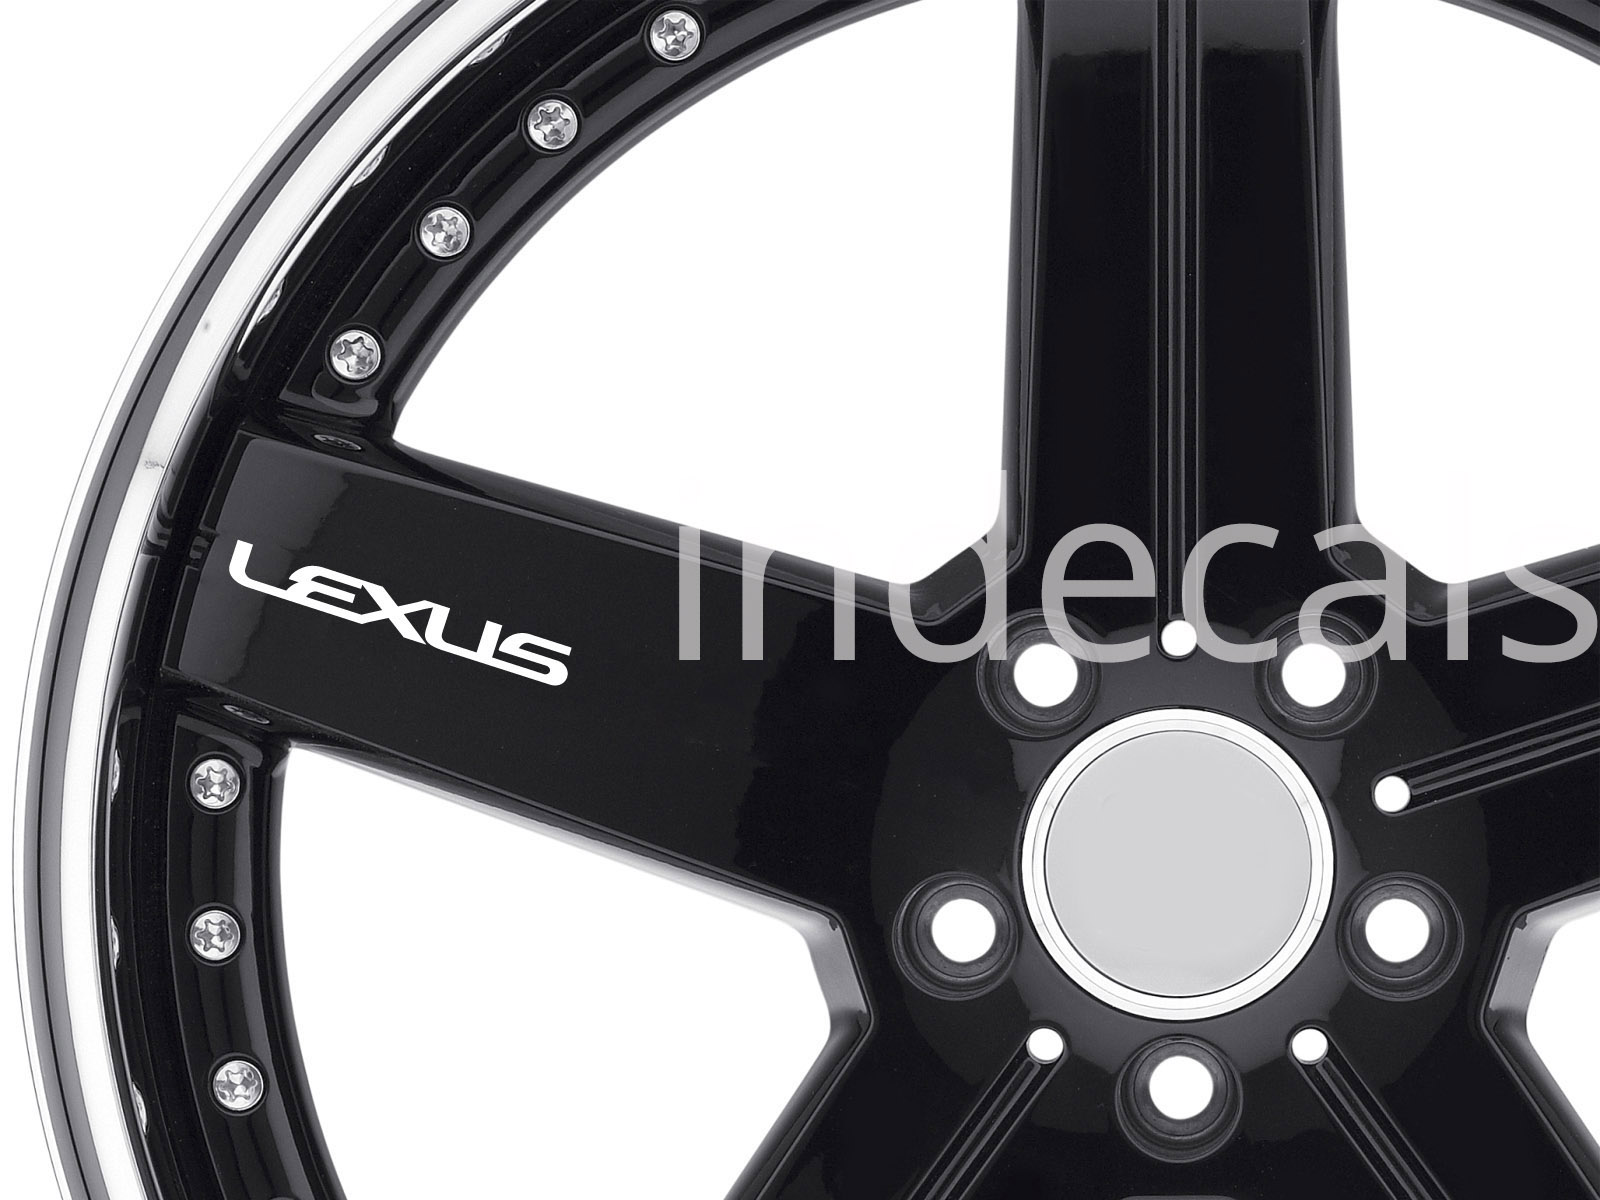 6 x Lexus Stickers for Wheels - White